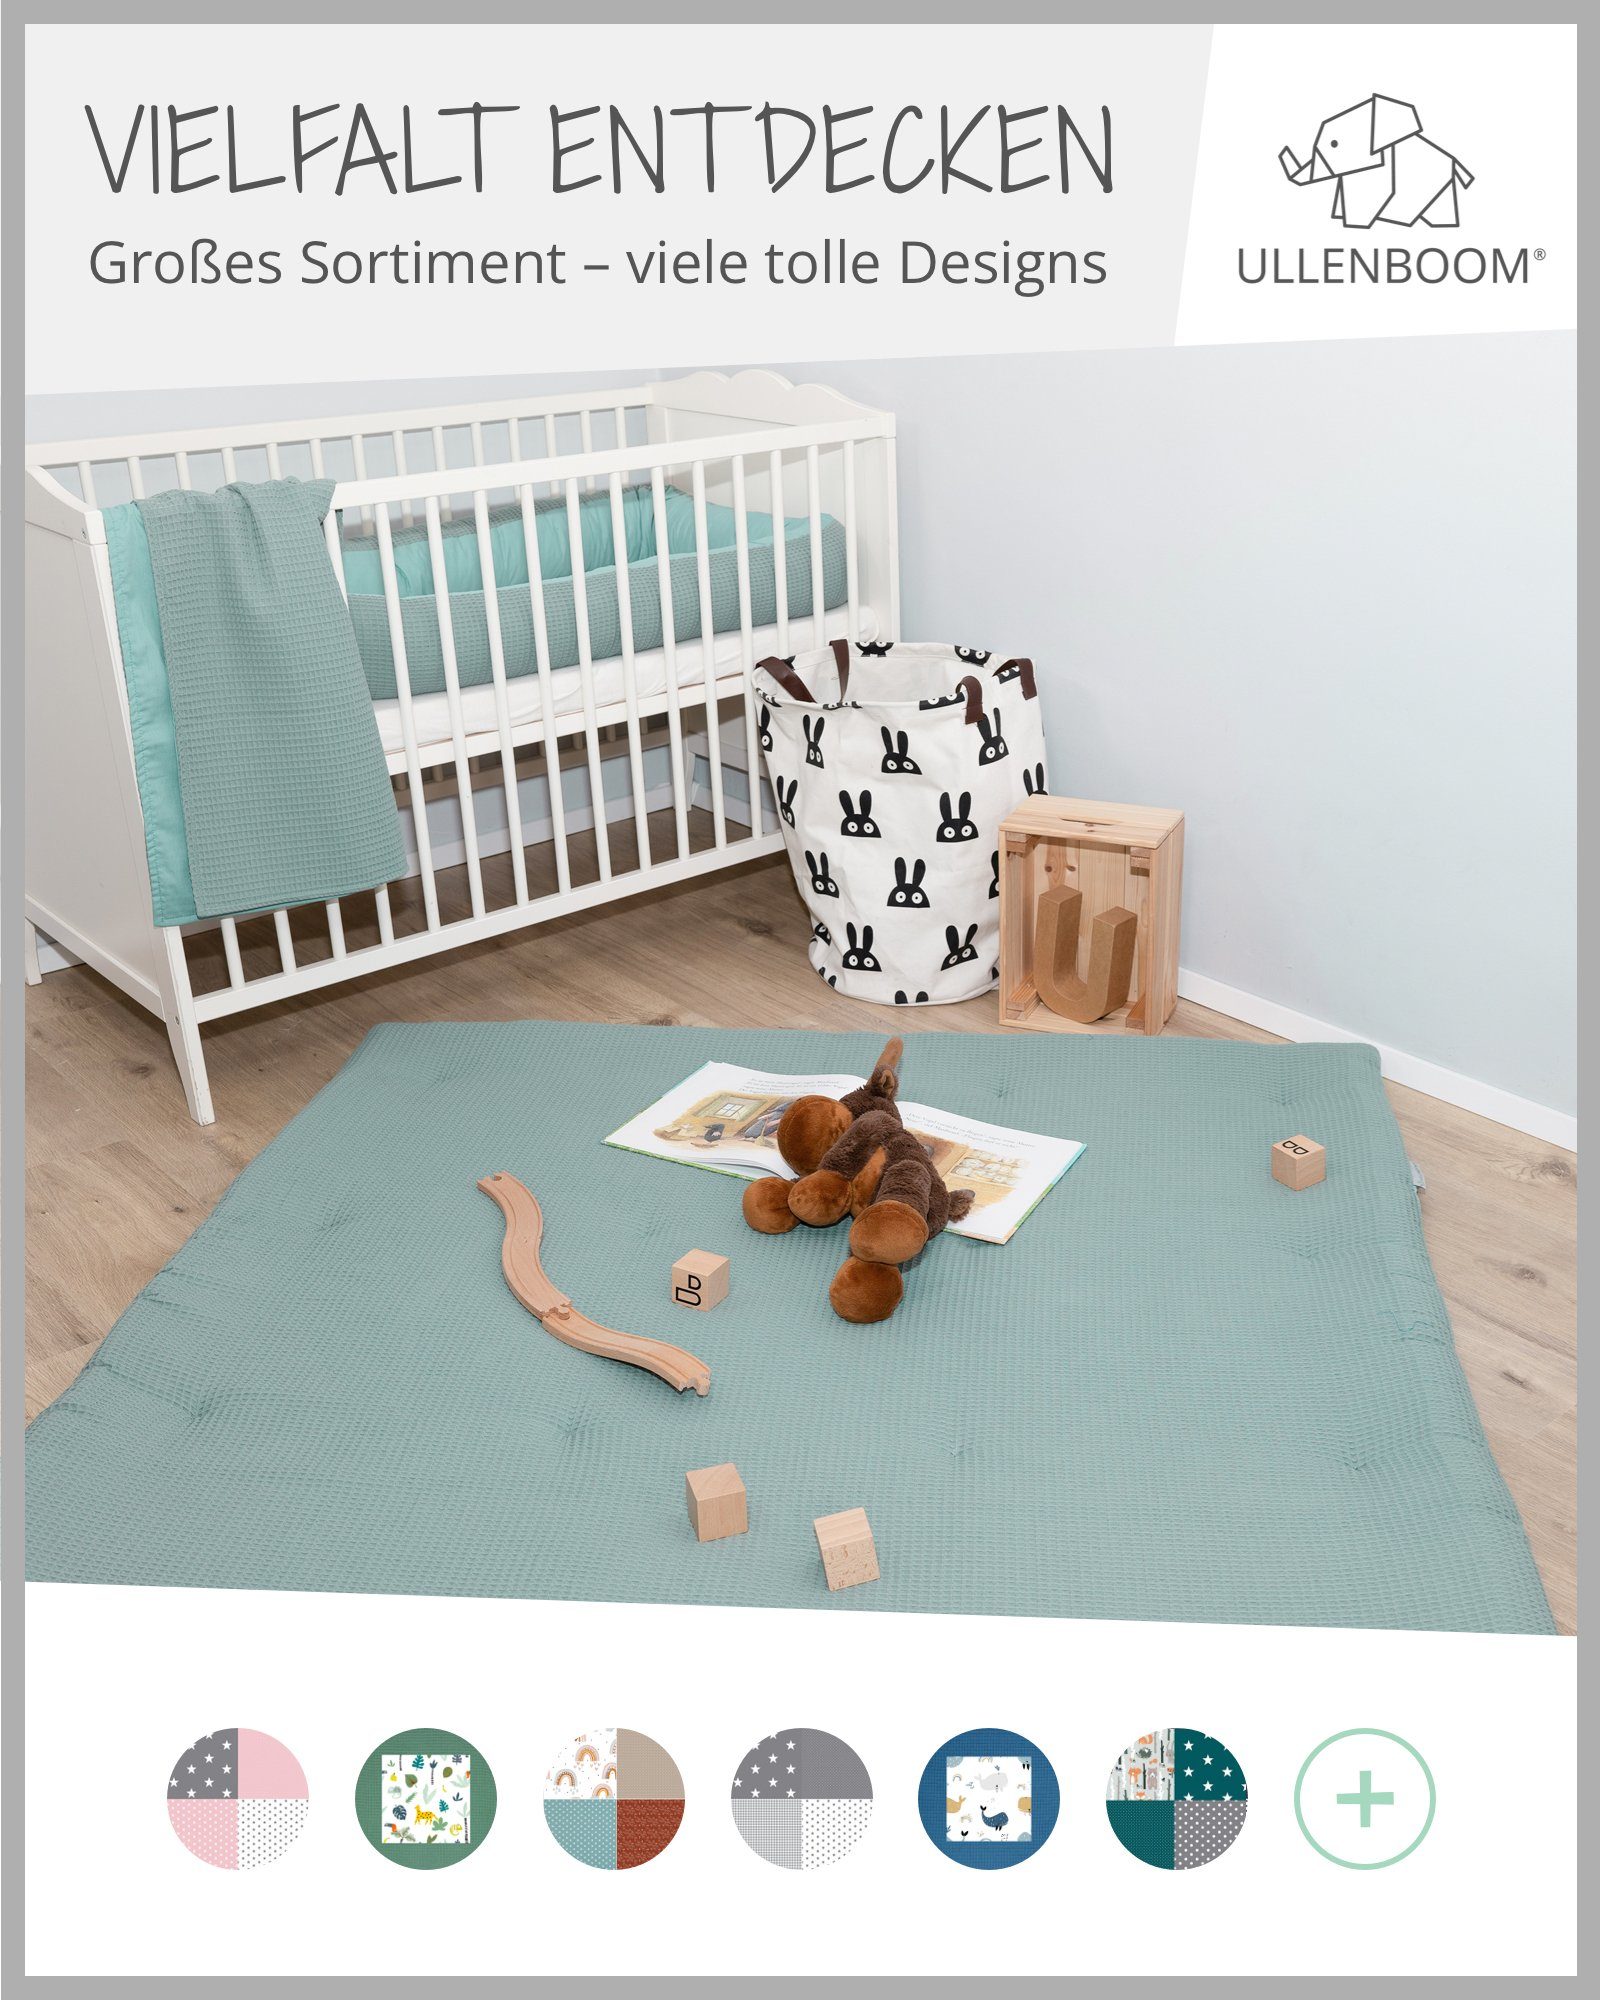 cm hochwertiger Uni 70x100 ®, in EU, Babydecke (Made & ULLENBOOM Baumwolle, Kinderwagendecke als in Babydecke Made Aus Salbeigrün EU), Spieldecke Design: